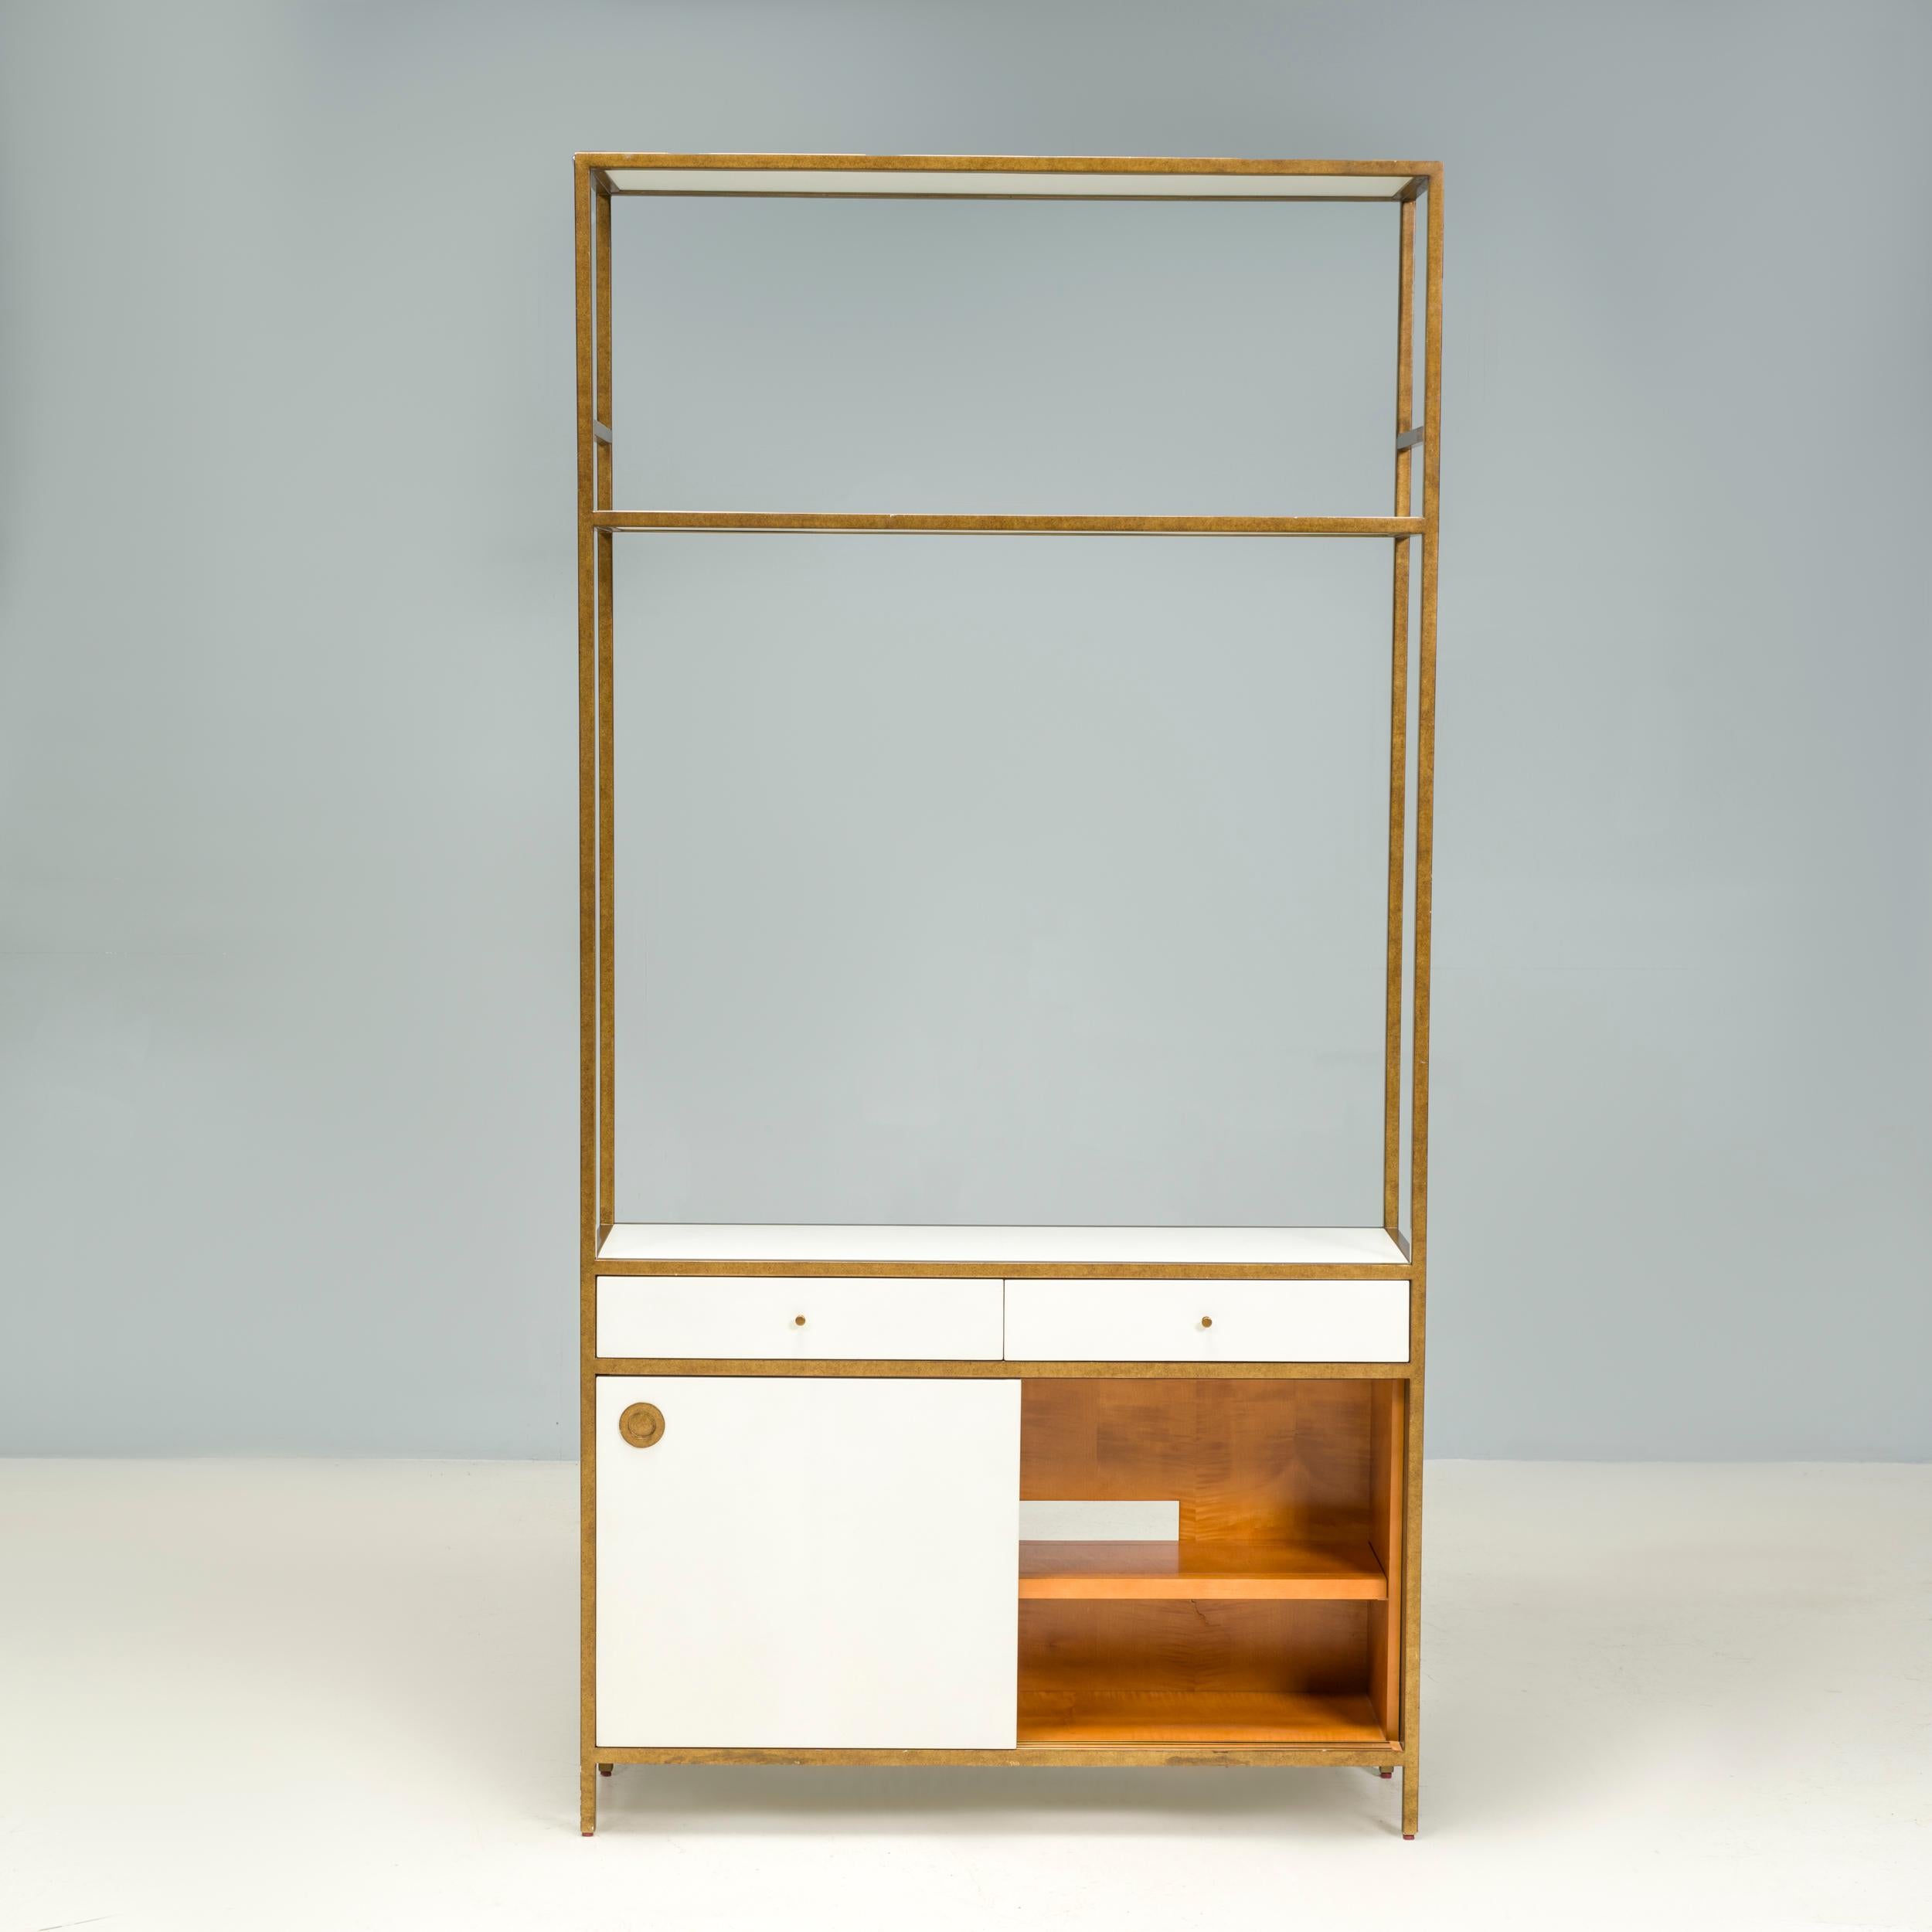 Julian Chichester gründete 1995 seine Möbeldesignfirma, die sich von den klassischen Formen des 19. und 20. Jahrhunderts inspirieren ließ und ihnen durch zeitgenössische Oberflächen und Details eine eigene Note verlieh.

Das Bücherregal University